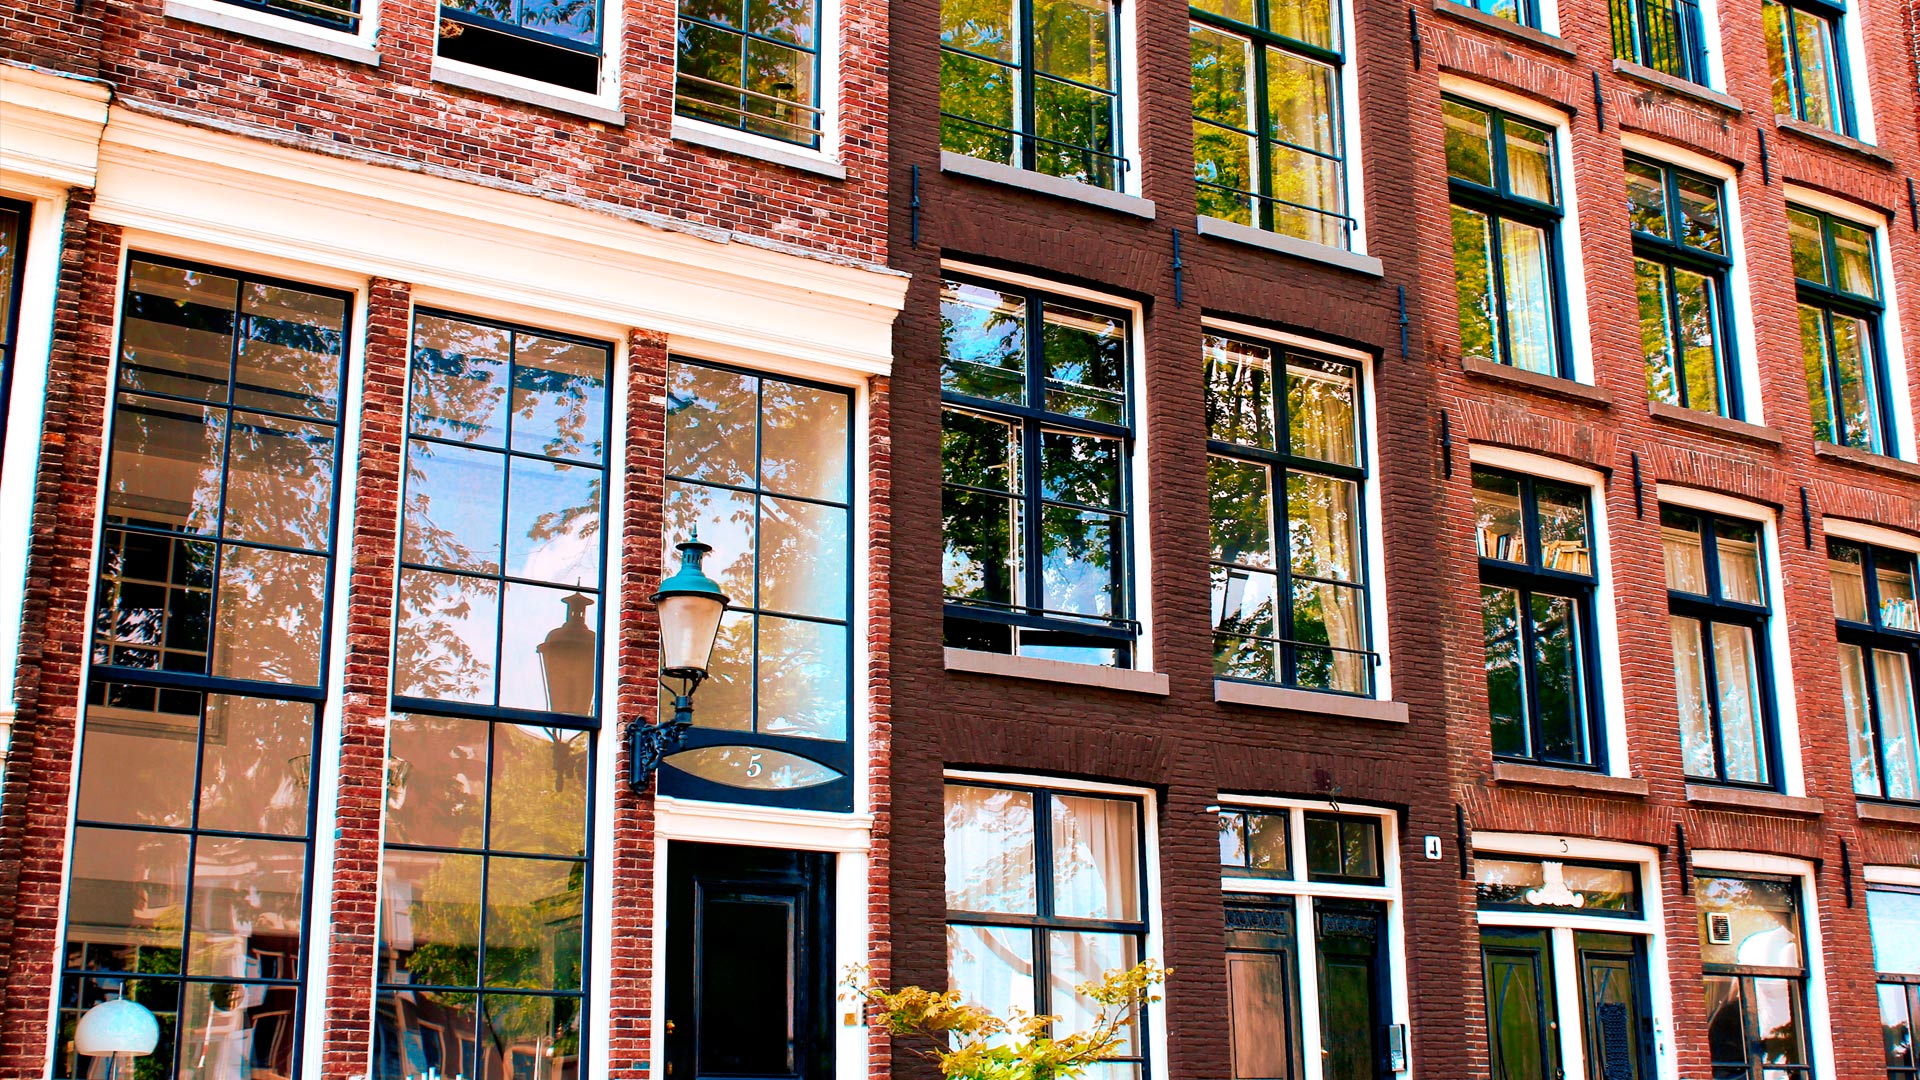 Dlaczego w Holandii są duże okna? Dlaczego nie ma firanek?